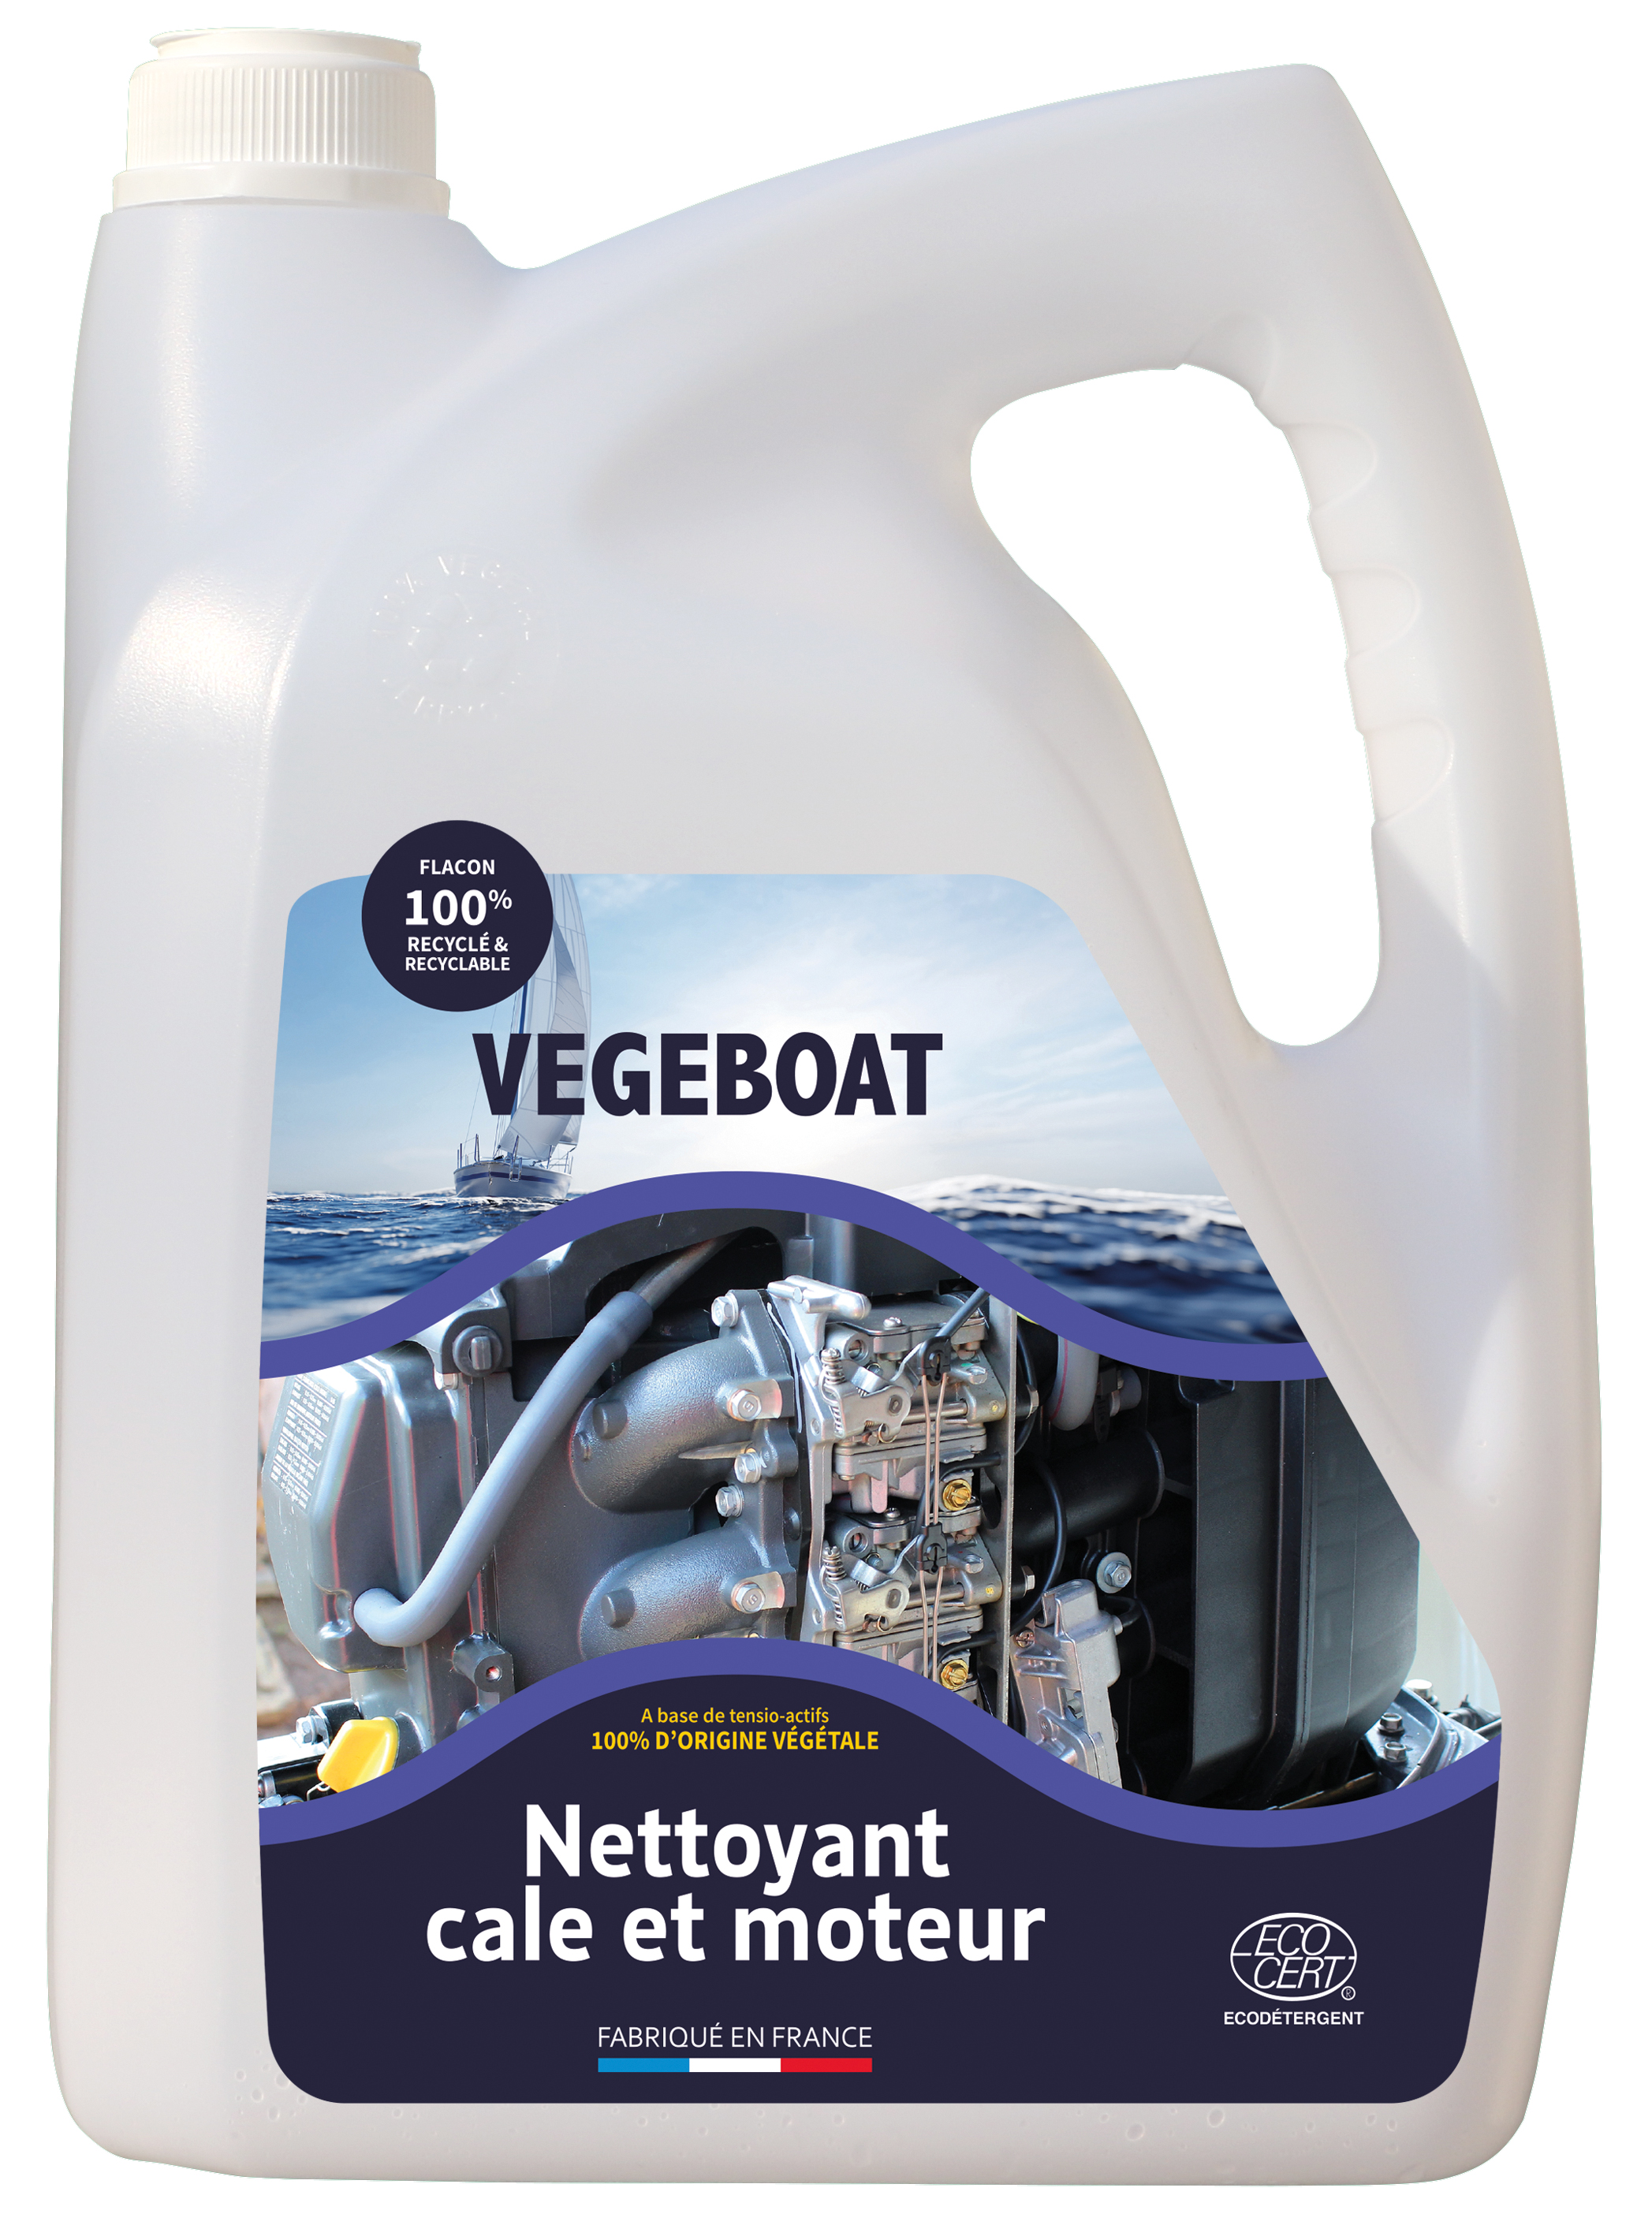 Nettoyant cale et moteur concentré Végéboat - Nettoyants écologiques puissants pour l’entretien des bateaux et des ports.